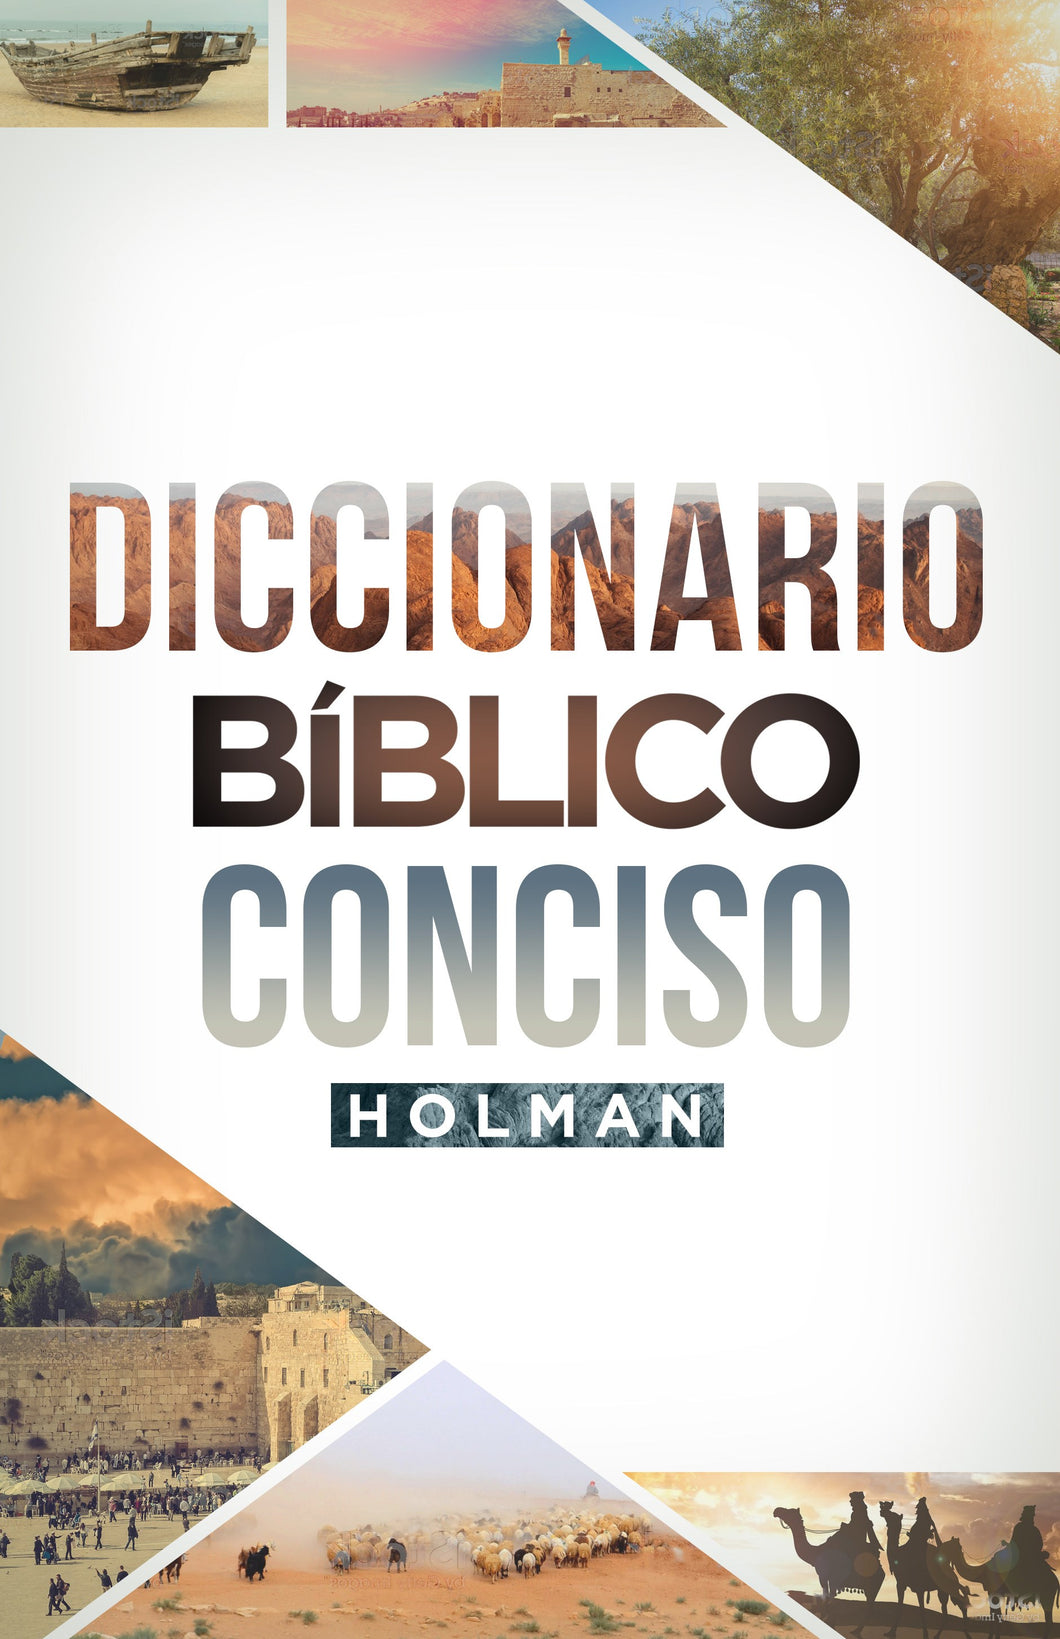 Spanish-Holman Concise Bible Dictionary (Diccionario Biblico Conciso Holman) (Repack)